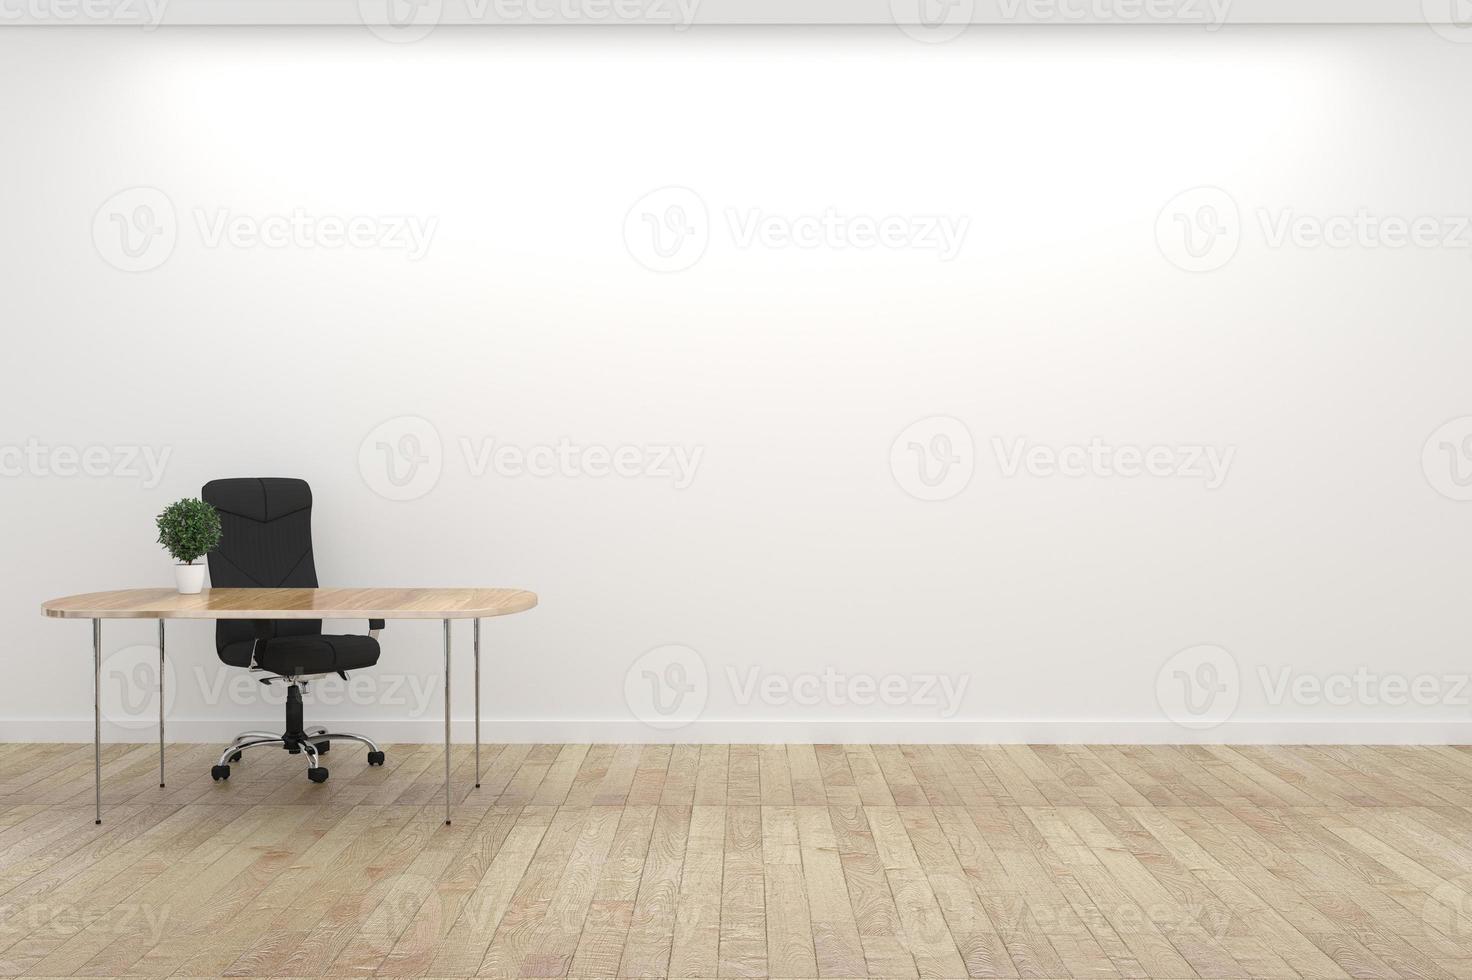 interno bianco vuoto della sala conferenze con pavimento in legno sul fondo bianco della parete - interno vuoto della stanza di affari della stanza. rendering 3d foto